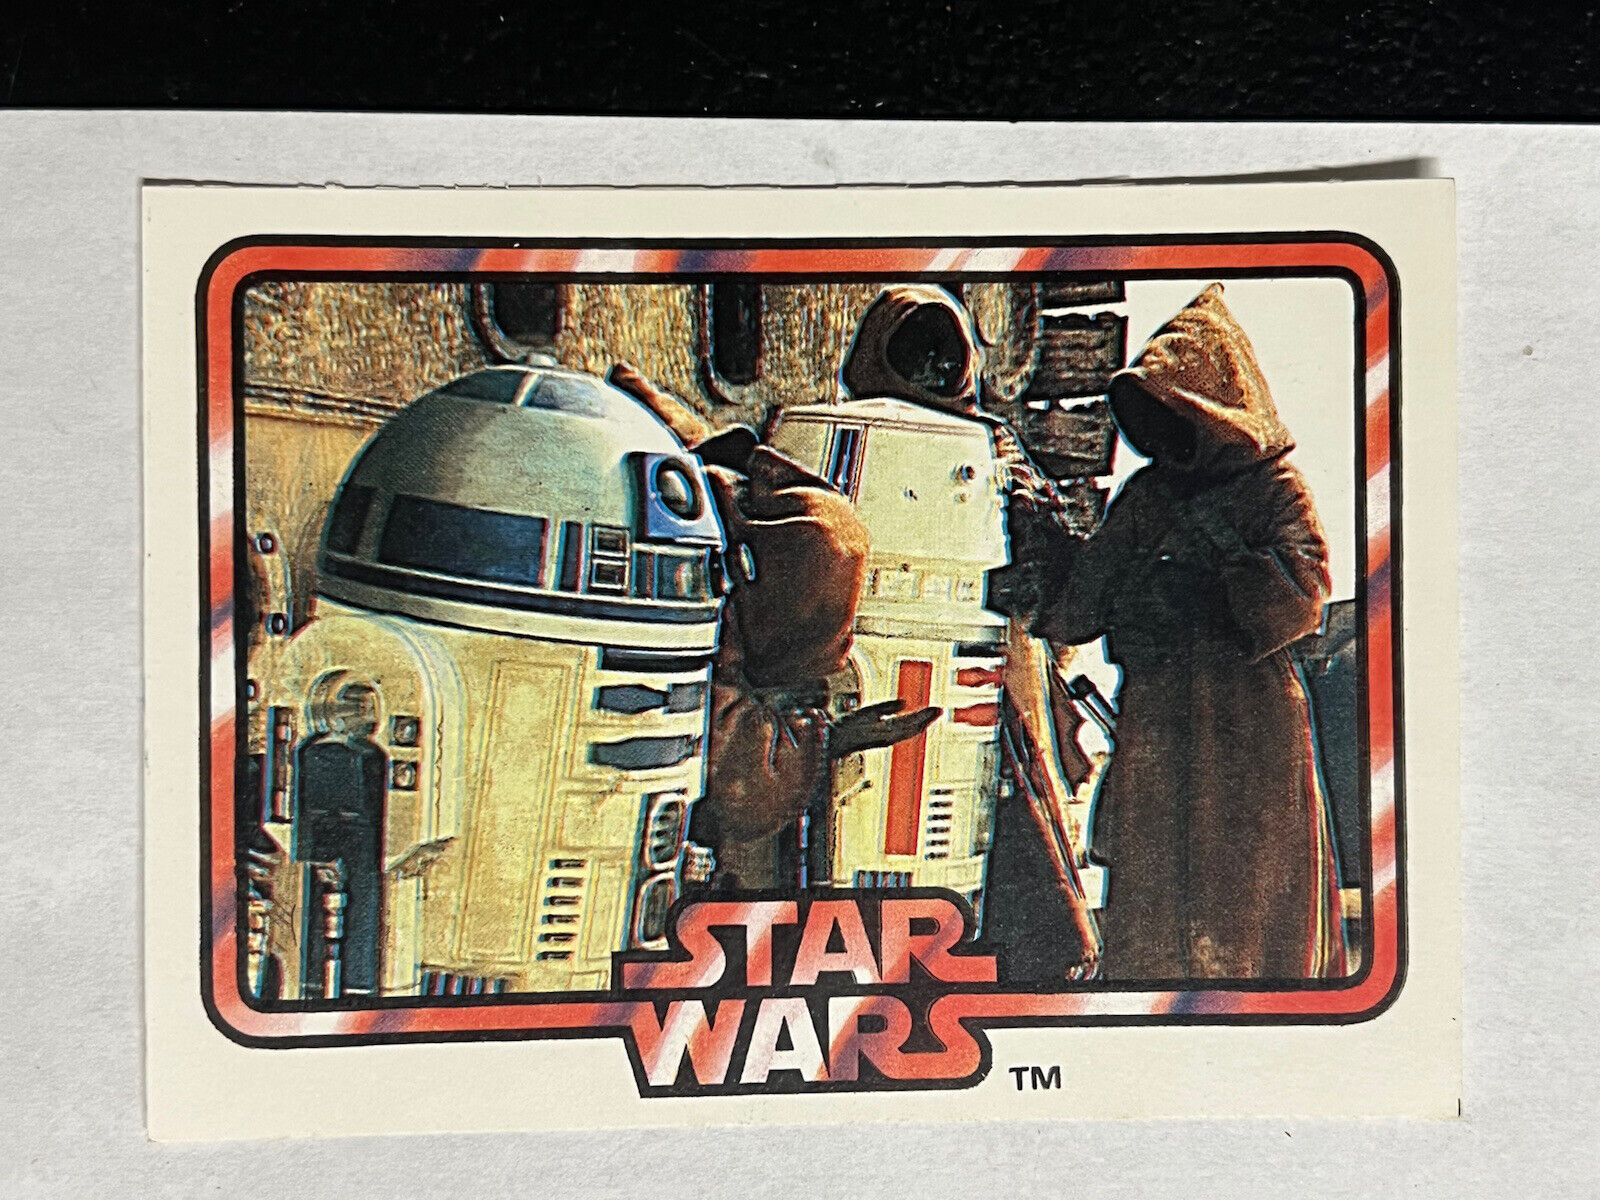 Vintage 1978 Star Wars General Mills Big G Cereals Card #17 of 18 Jawas & R2-D2